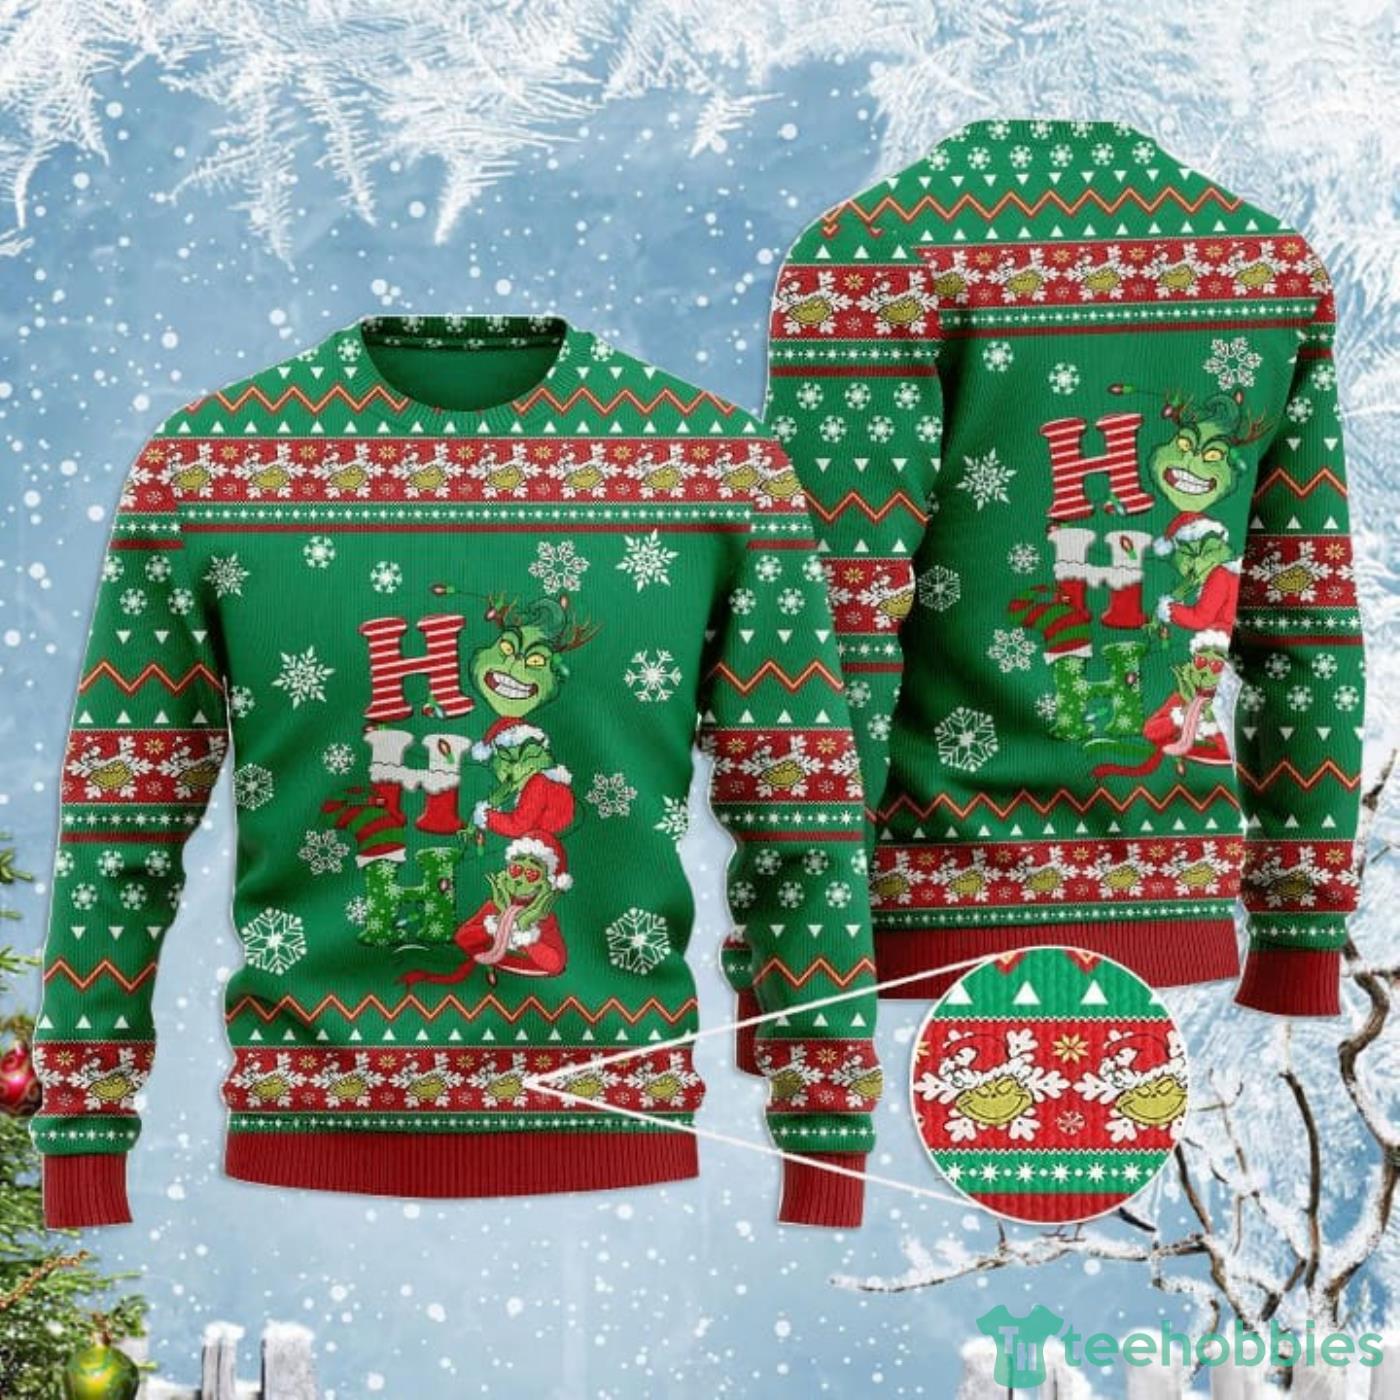 https://image.teehobbies.us/2022/11/ho-ho-ho-grinch-ugly-christmas-sweaters.jpg